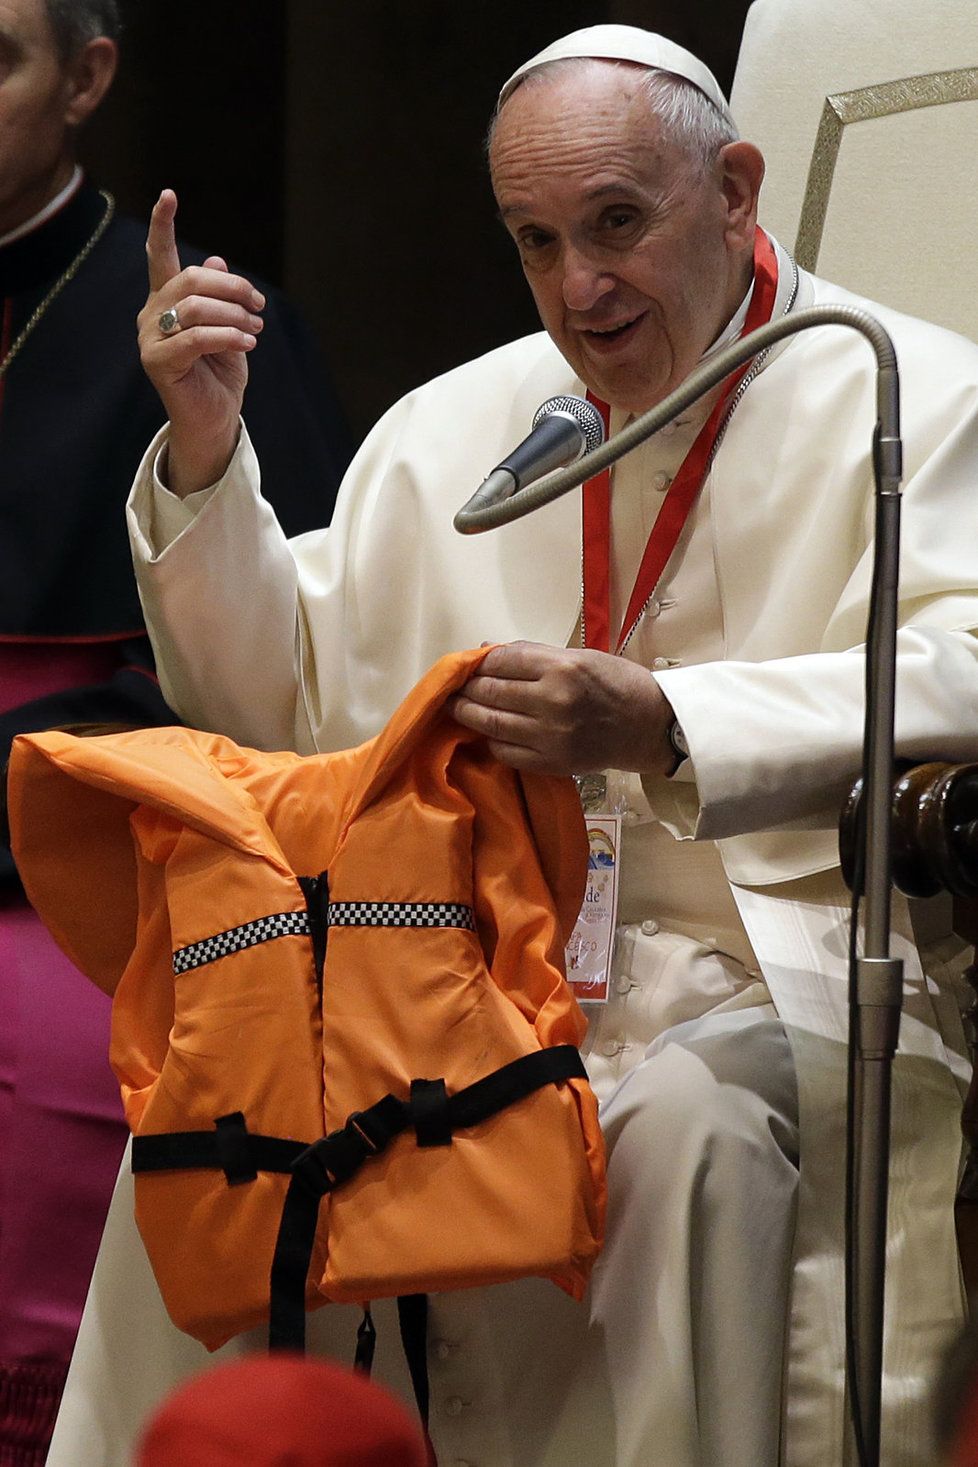 Papež držel v ruce vestu utonulé dívky a kázal: Uprchlíci nejsou nebezpeční, jsou v nebezpečí